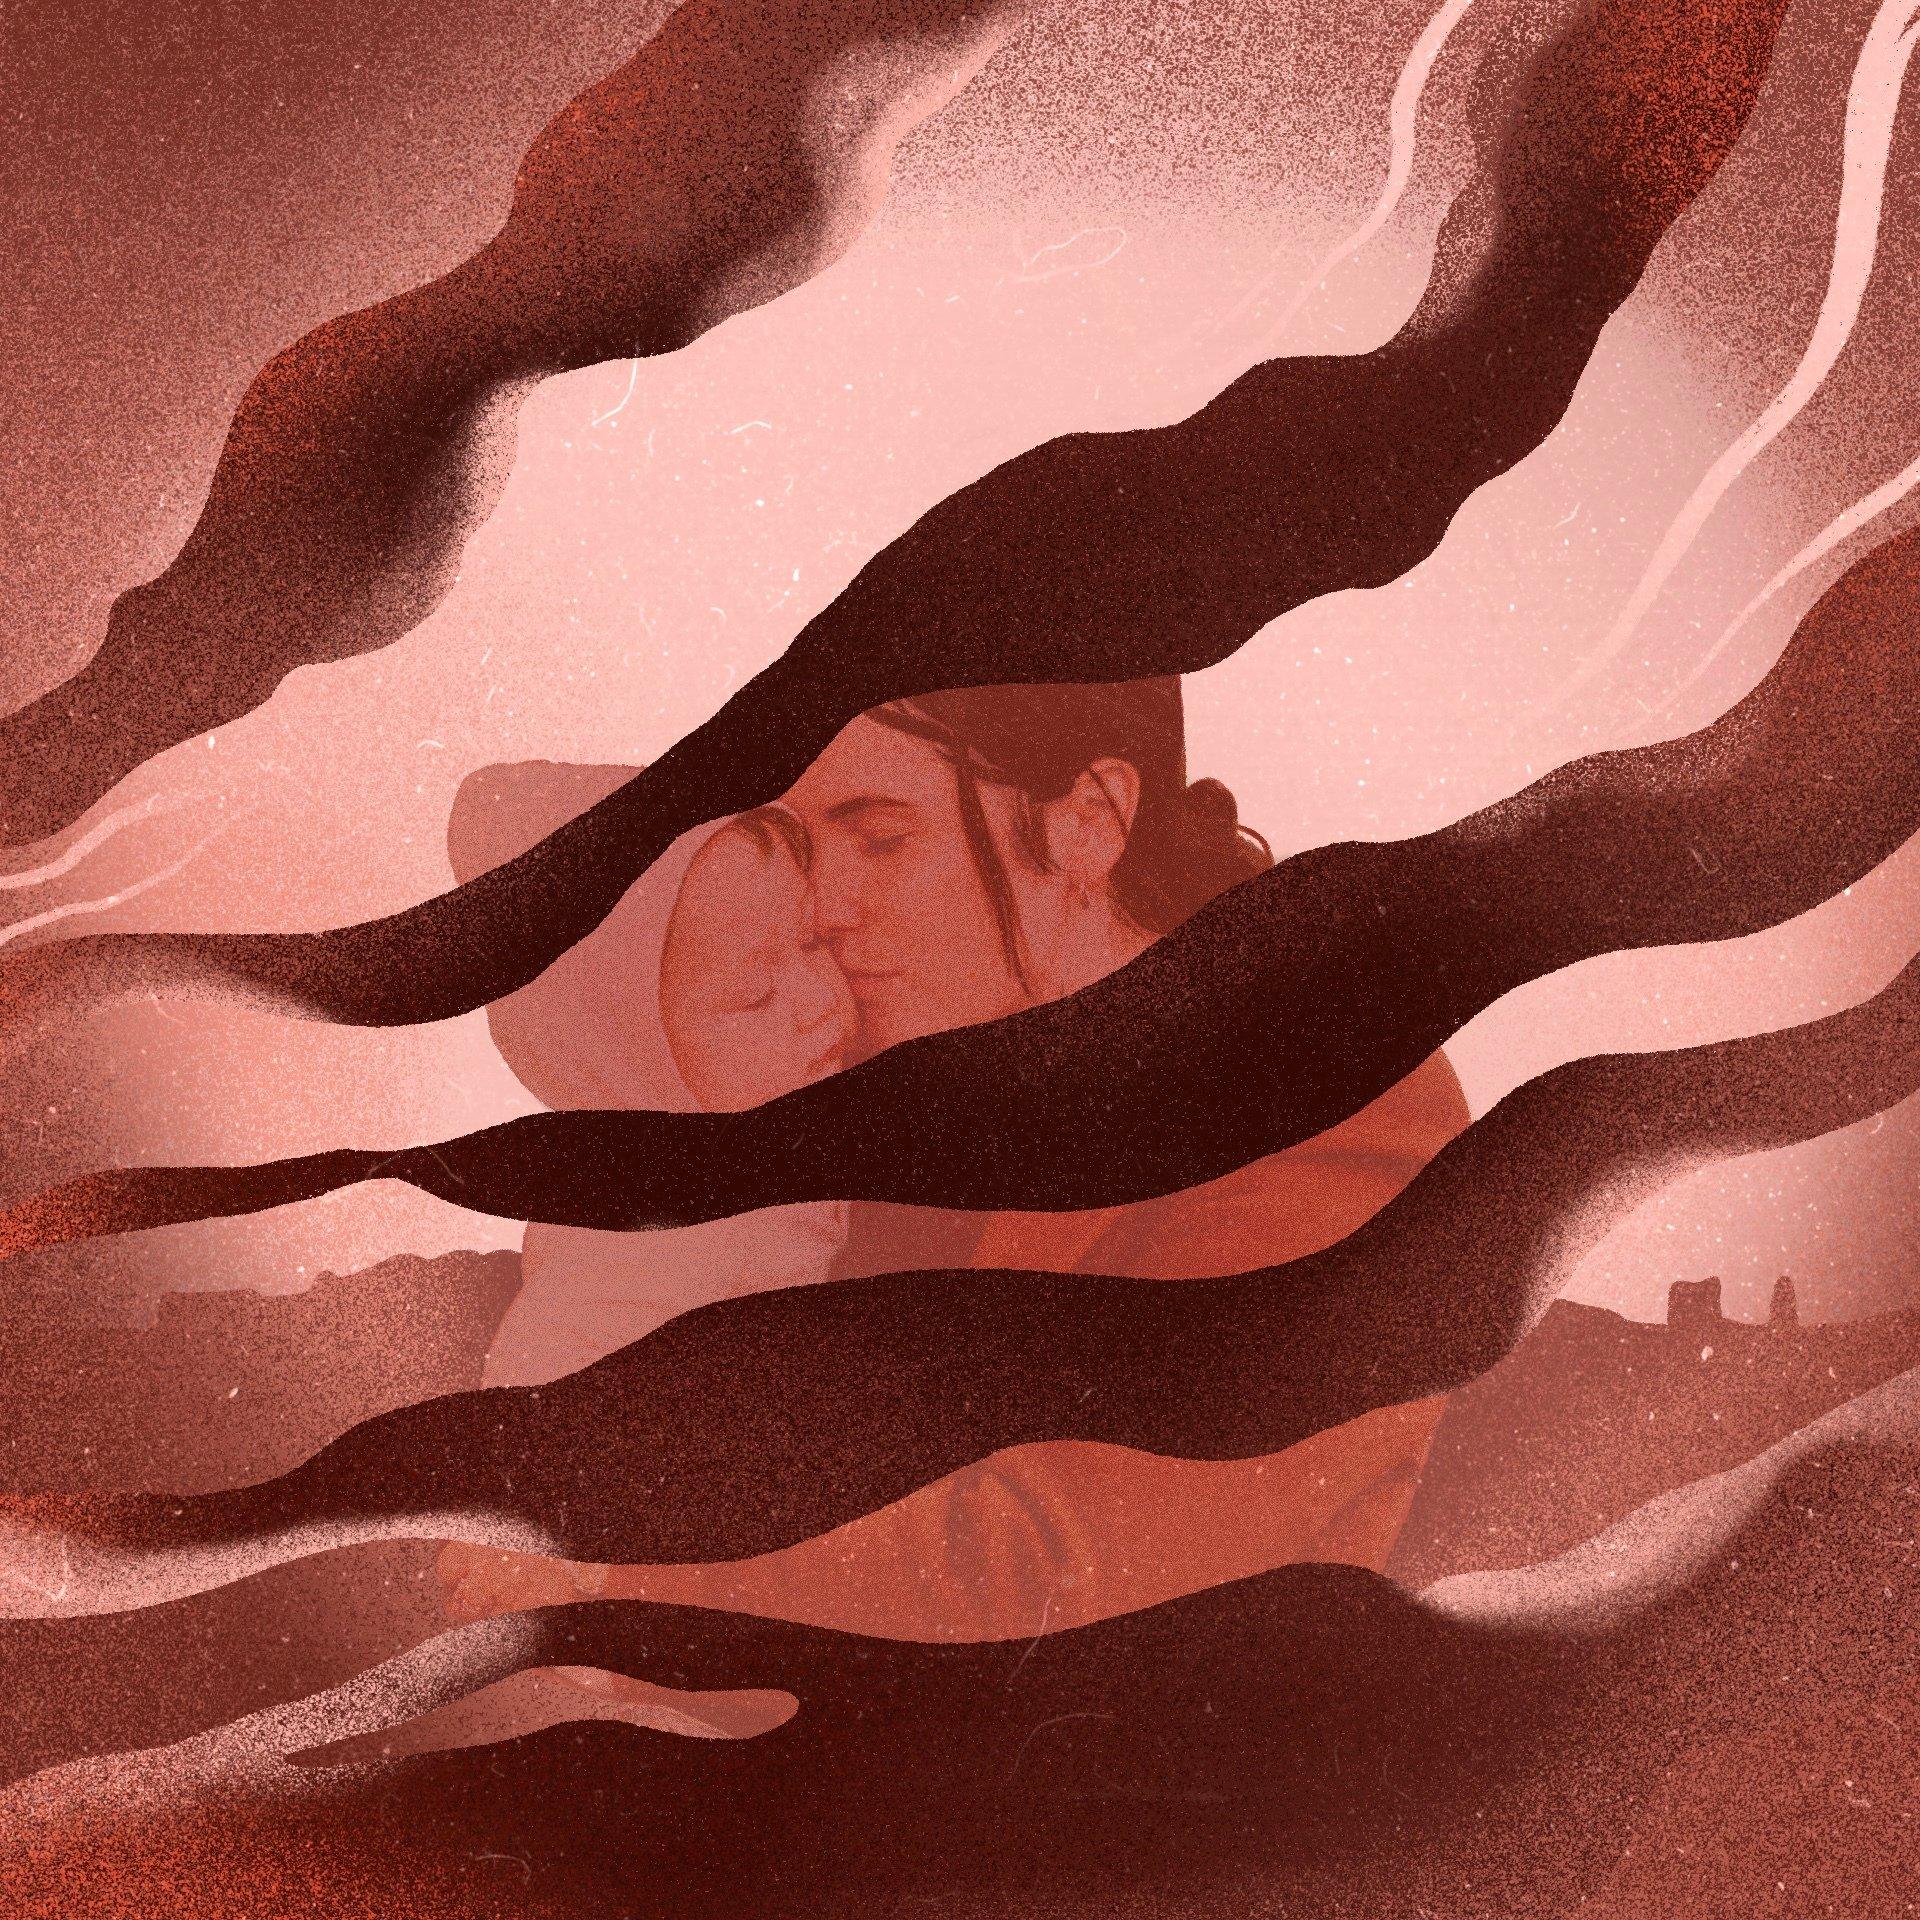 Na rysunku widać kobietę trzymającą małe dziecko. Kobieta trzyma dziecko przy twarzy. Nad nimi ciągną się czarne kłęby dymu. Ilustracja namalowana jest w brązowo-czerwonych barwach.